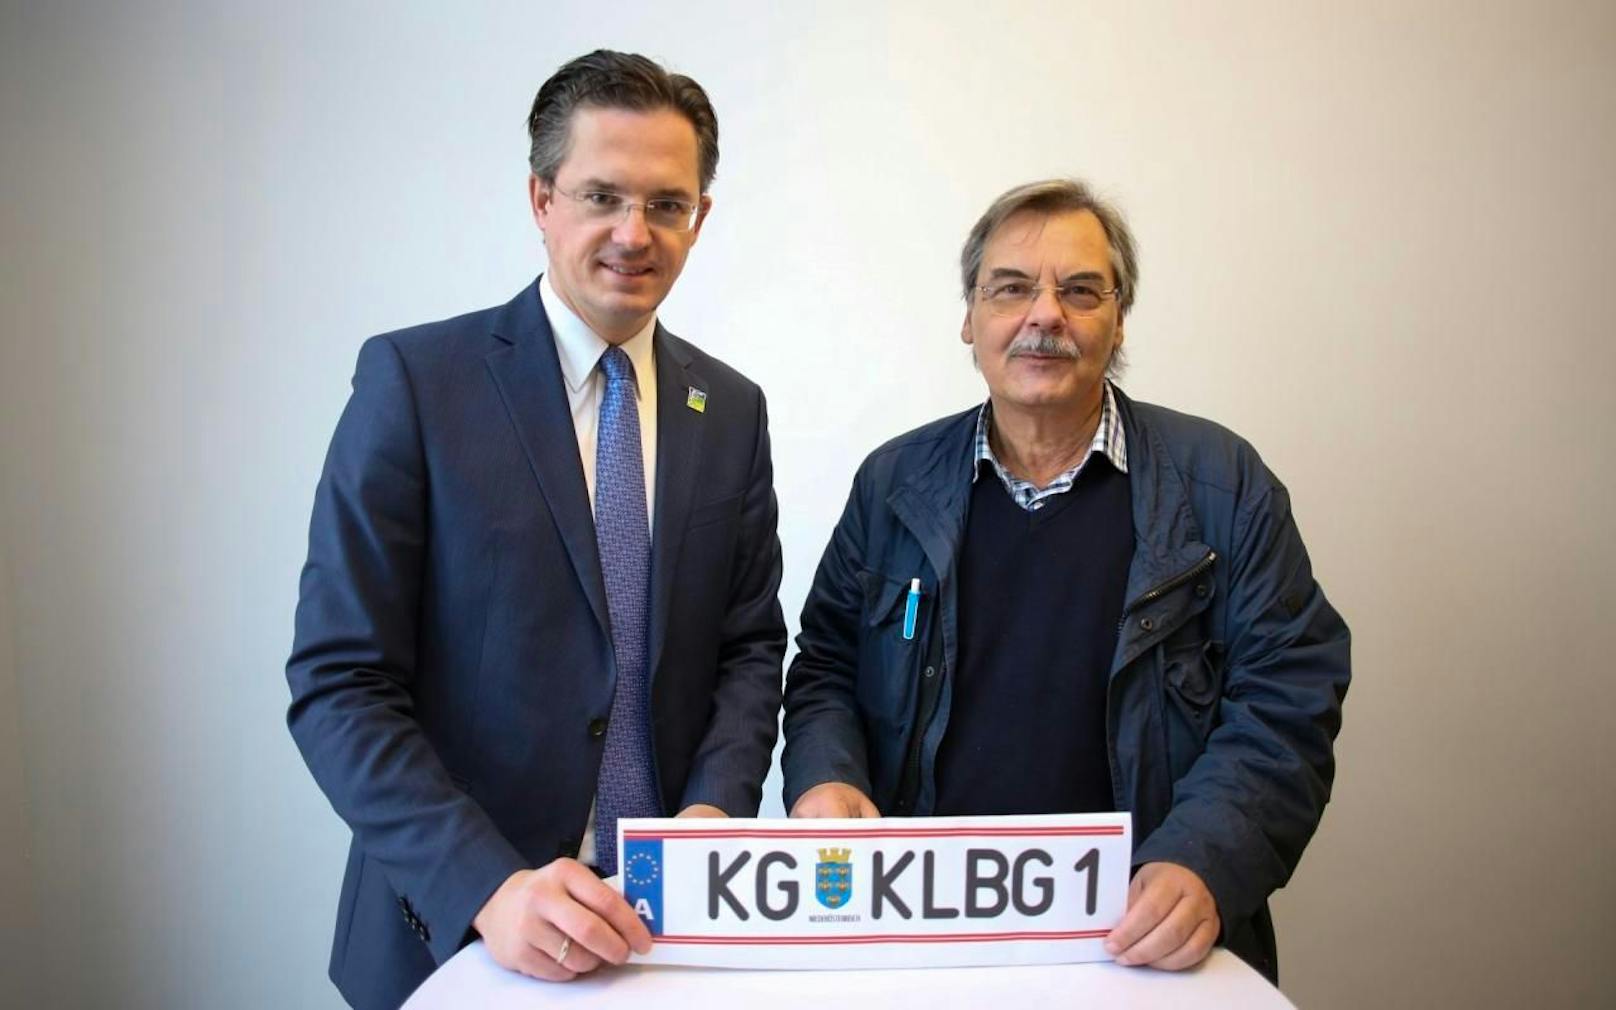 ÖVP Bürgermeister Stefan Schmuckenschlager und FPÖ-Stadtrat Josef Pitschko setzten sich erneut für ein KG-Kennzeichen ein. Mit Erfolg. Ab April 2020 kann es beantragt werden.